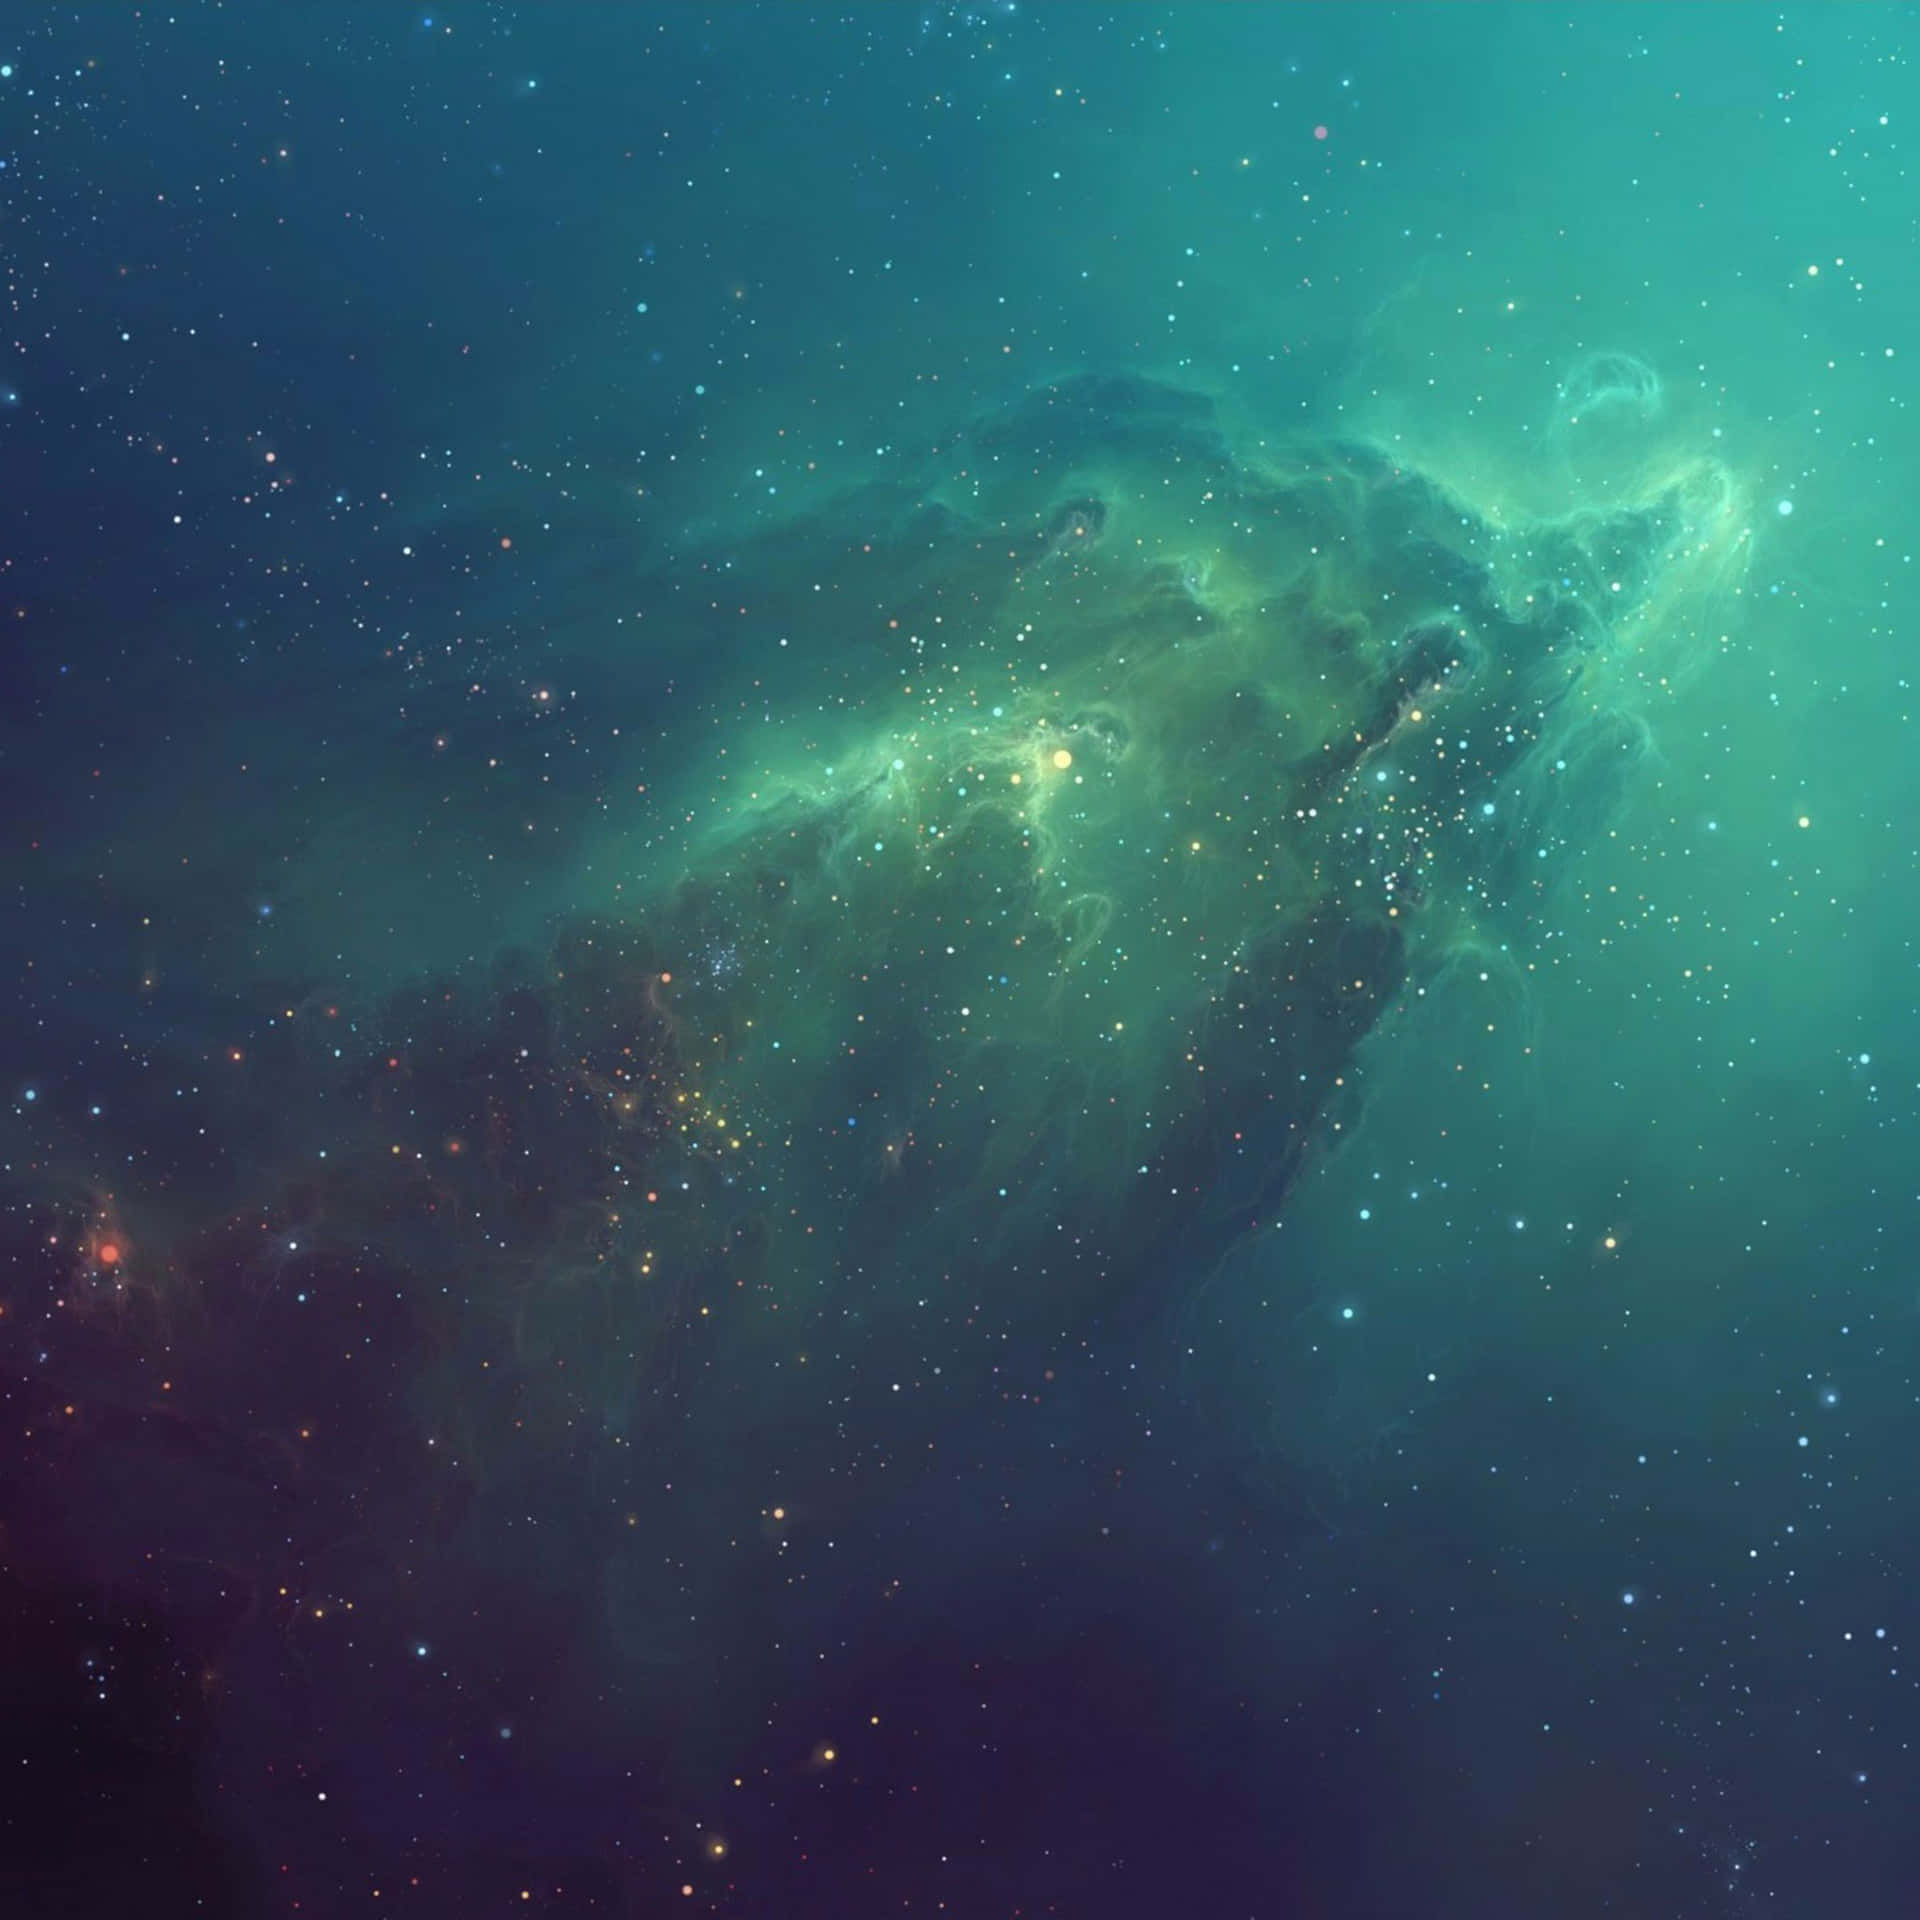 Entfesselnsie Das Volle Potenzial Ihres Ipads Mit Diesem Astronomischen Blick Auf Das Universum. Wallpaper